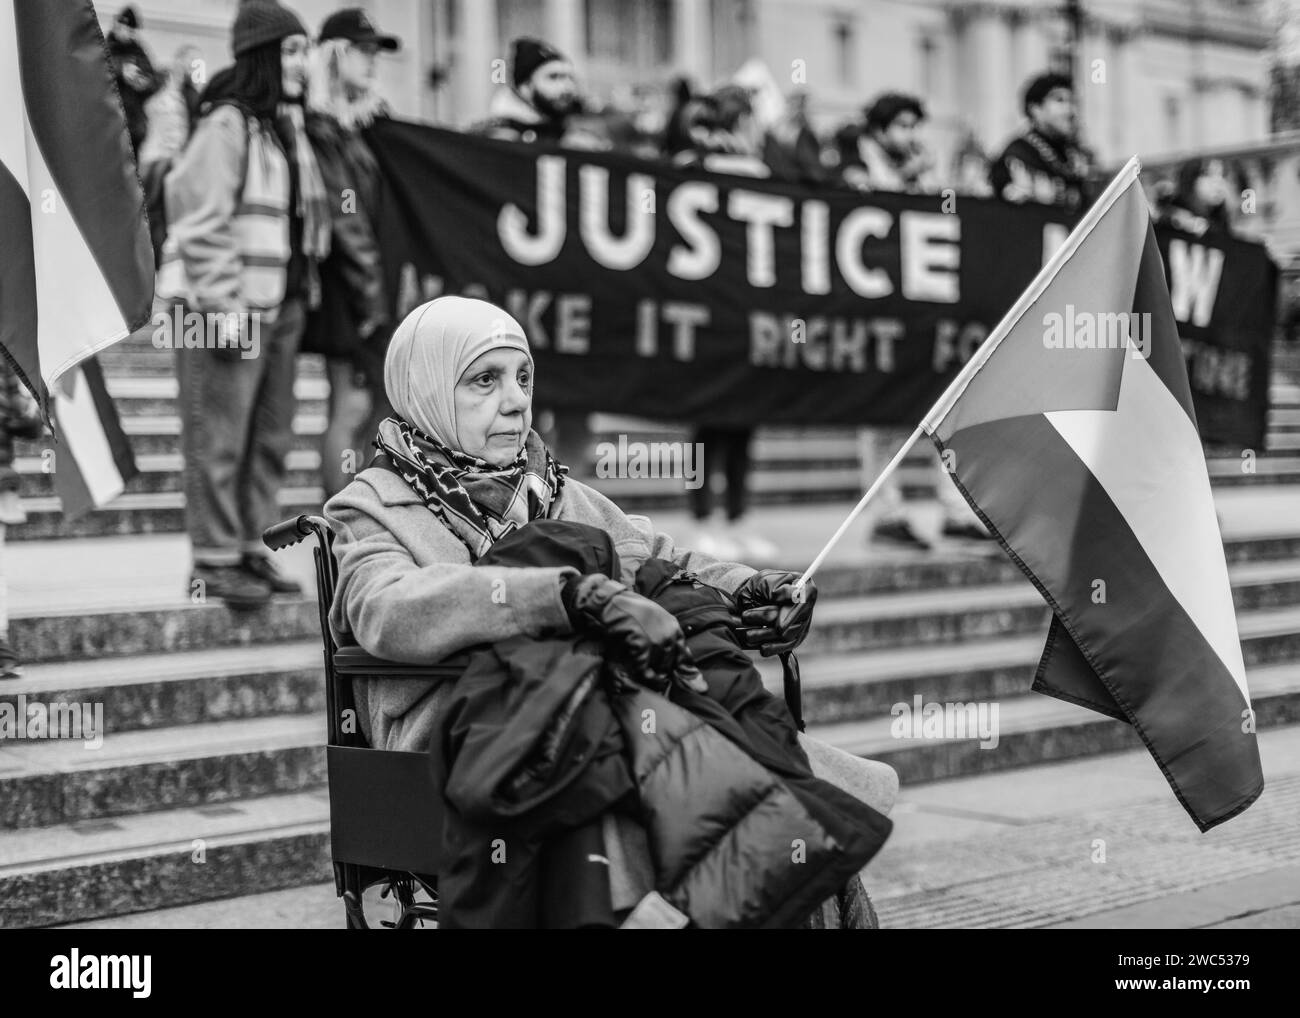 Une vieille dame en fauteuil roulant proteste devant une énorme bannière "JUSTICE NOW Make it Right for Palestine" à Trafalgar Square. Banque D'Images